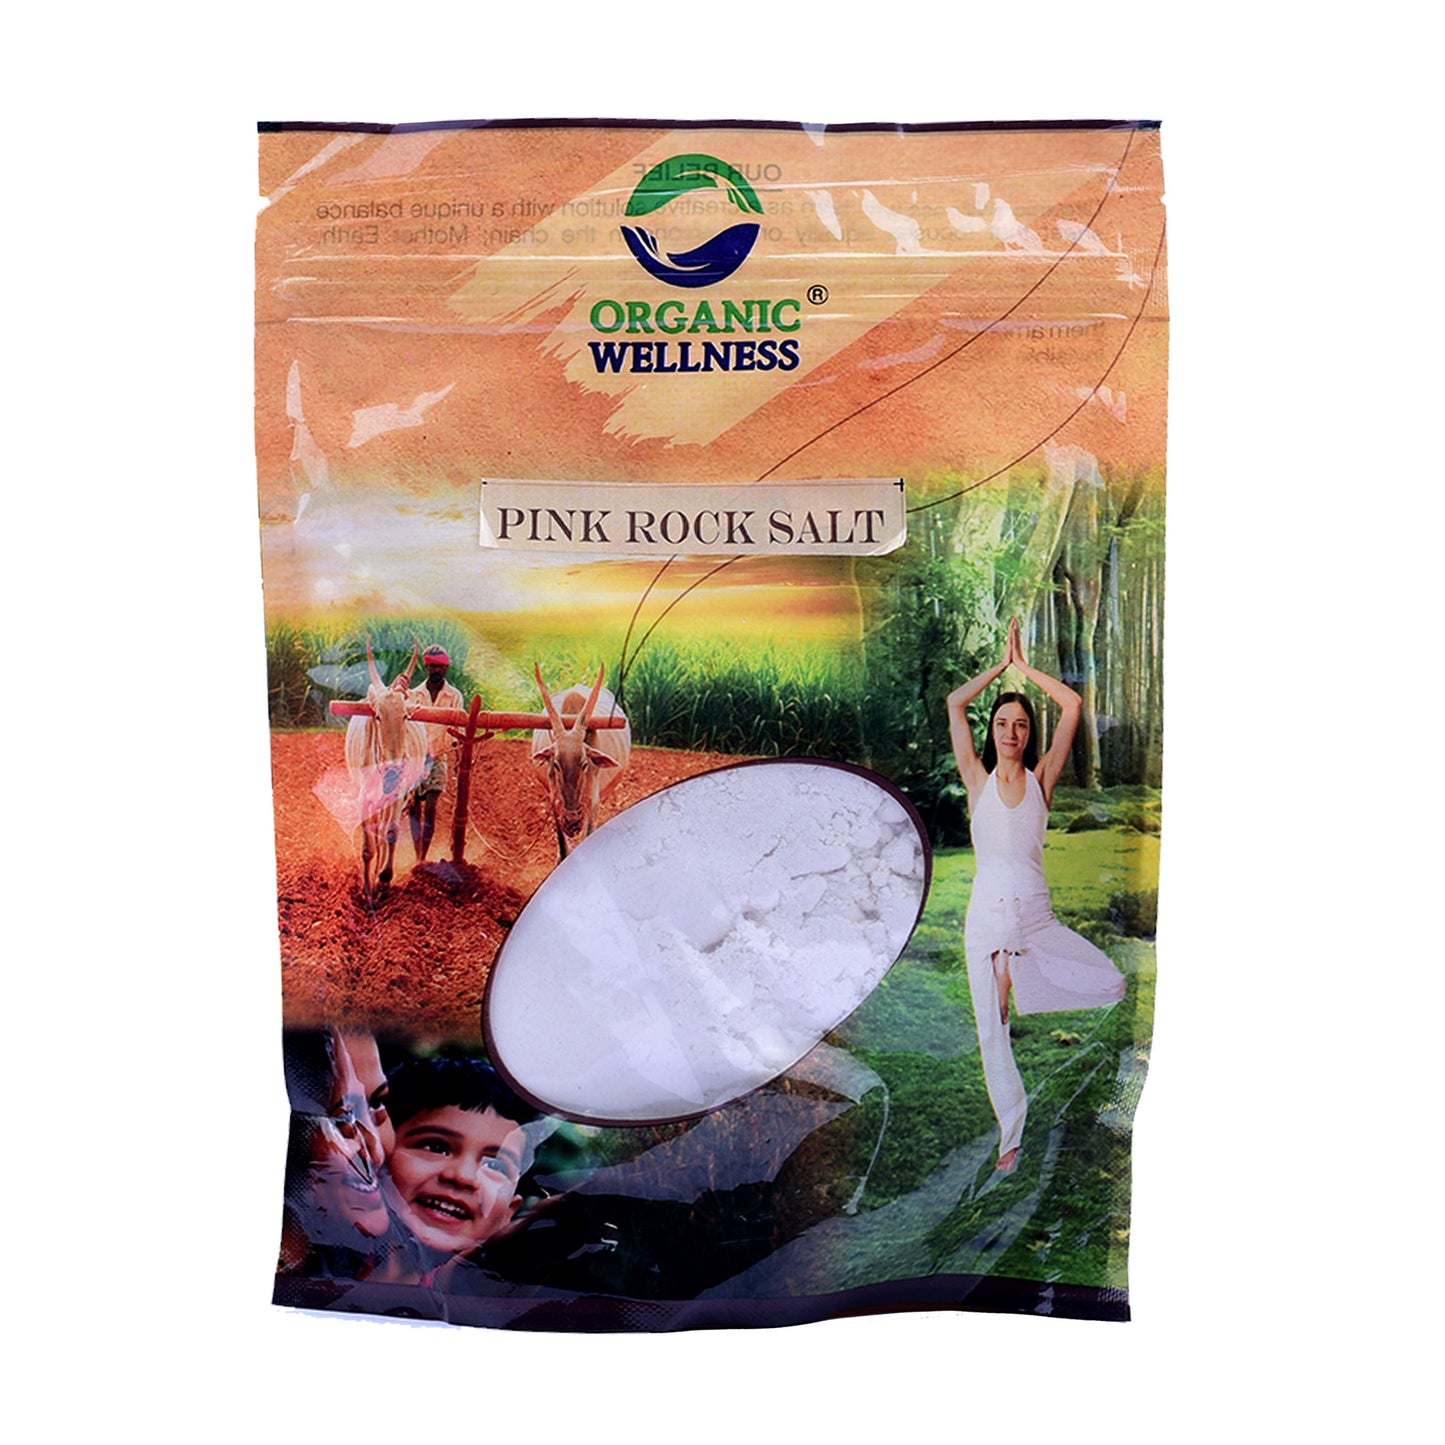 Organic Wellness Pink Rock Salt